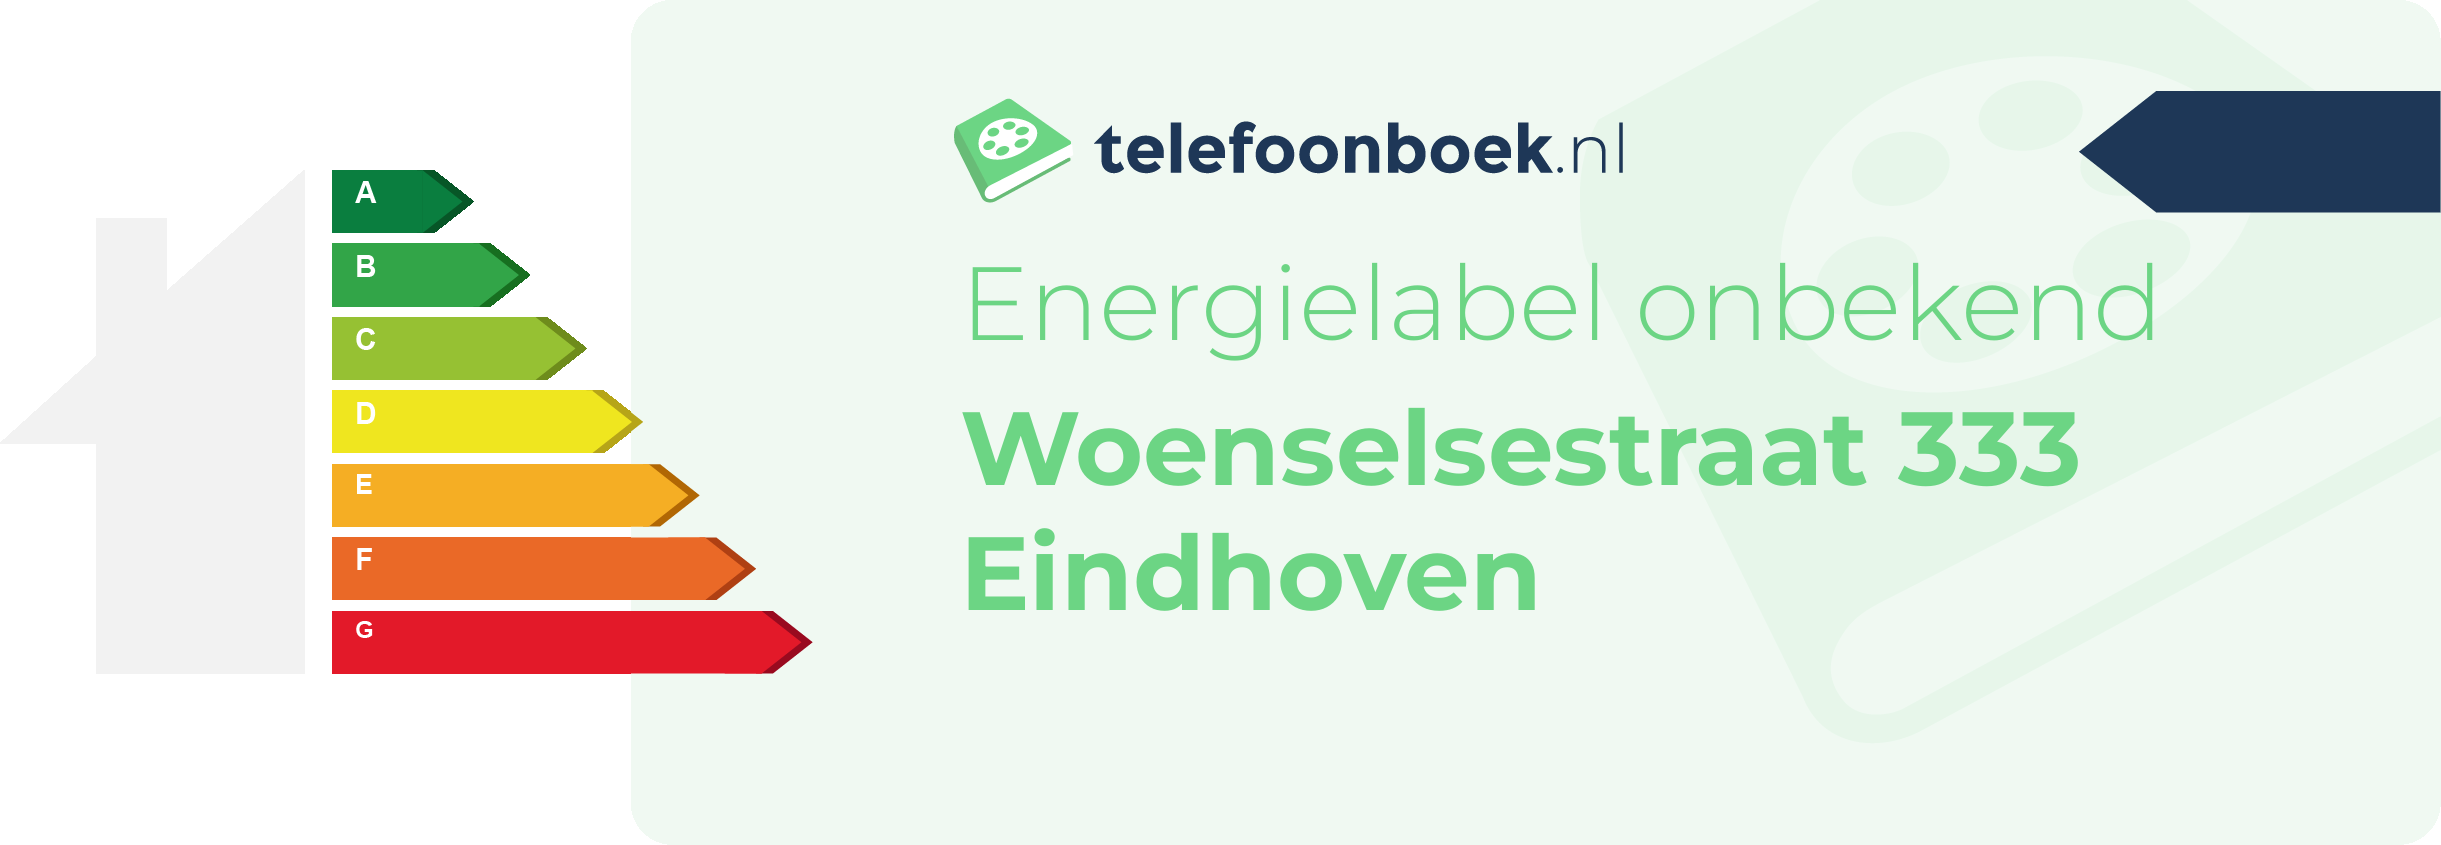 Energielabel Woenselsestraat 333 Eindhoven